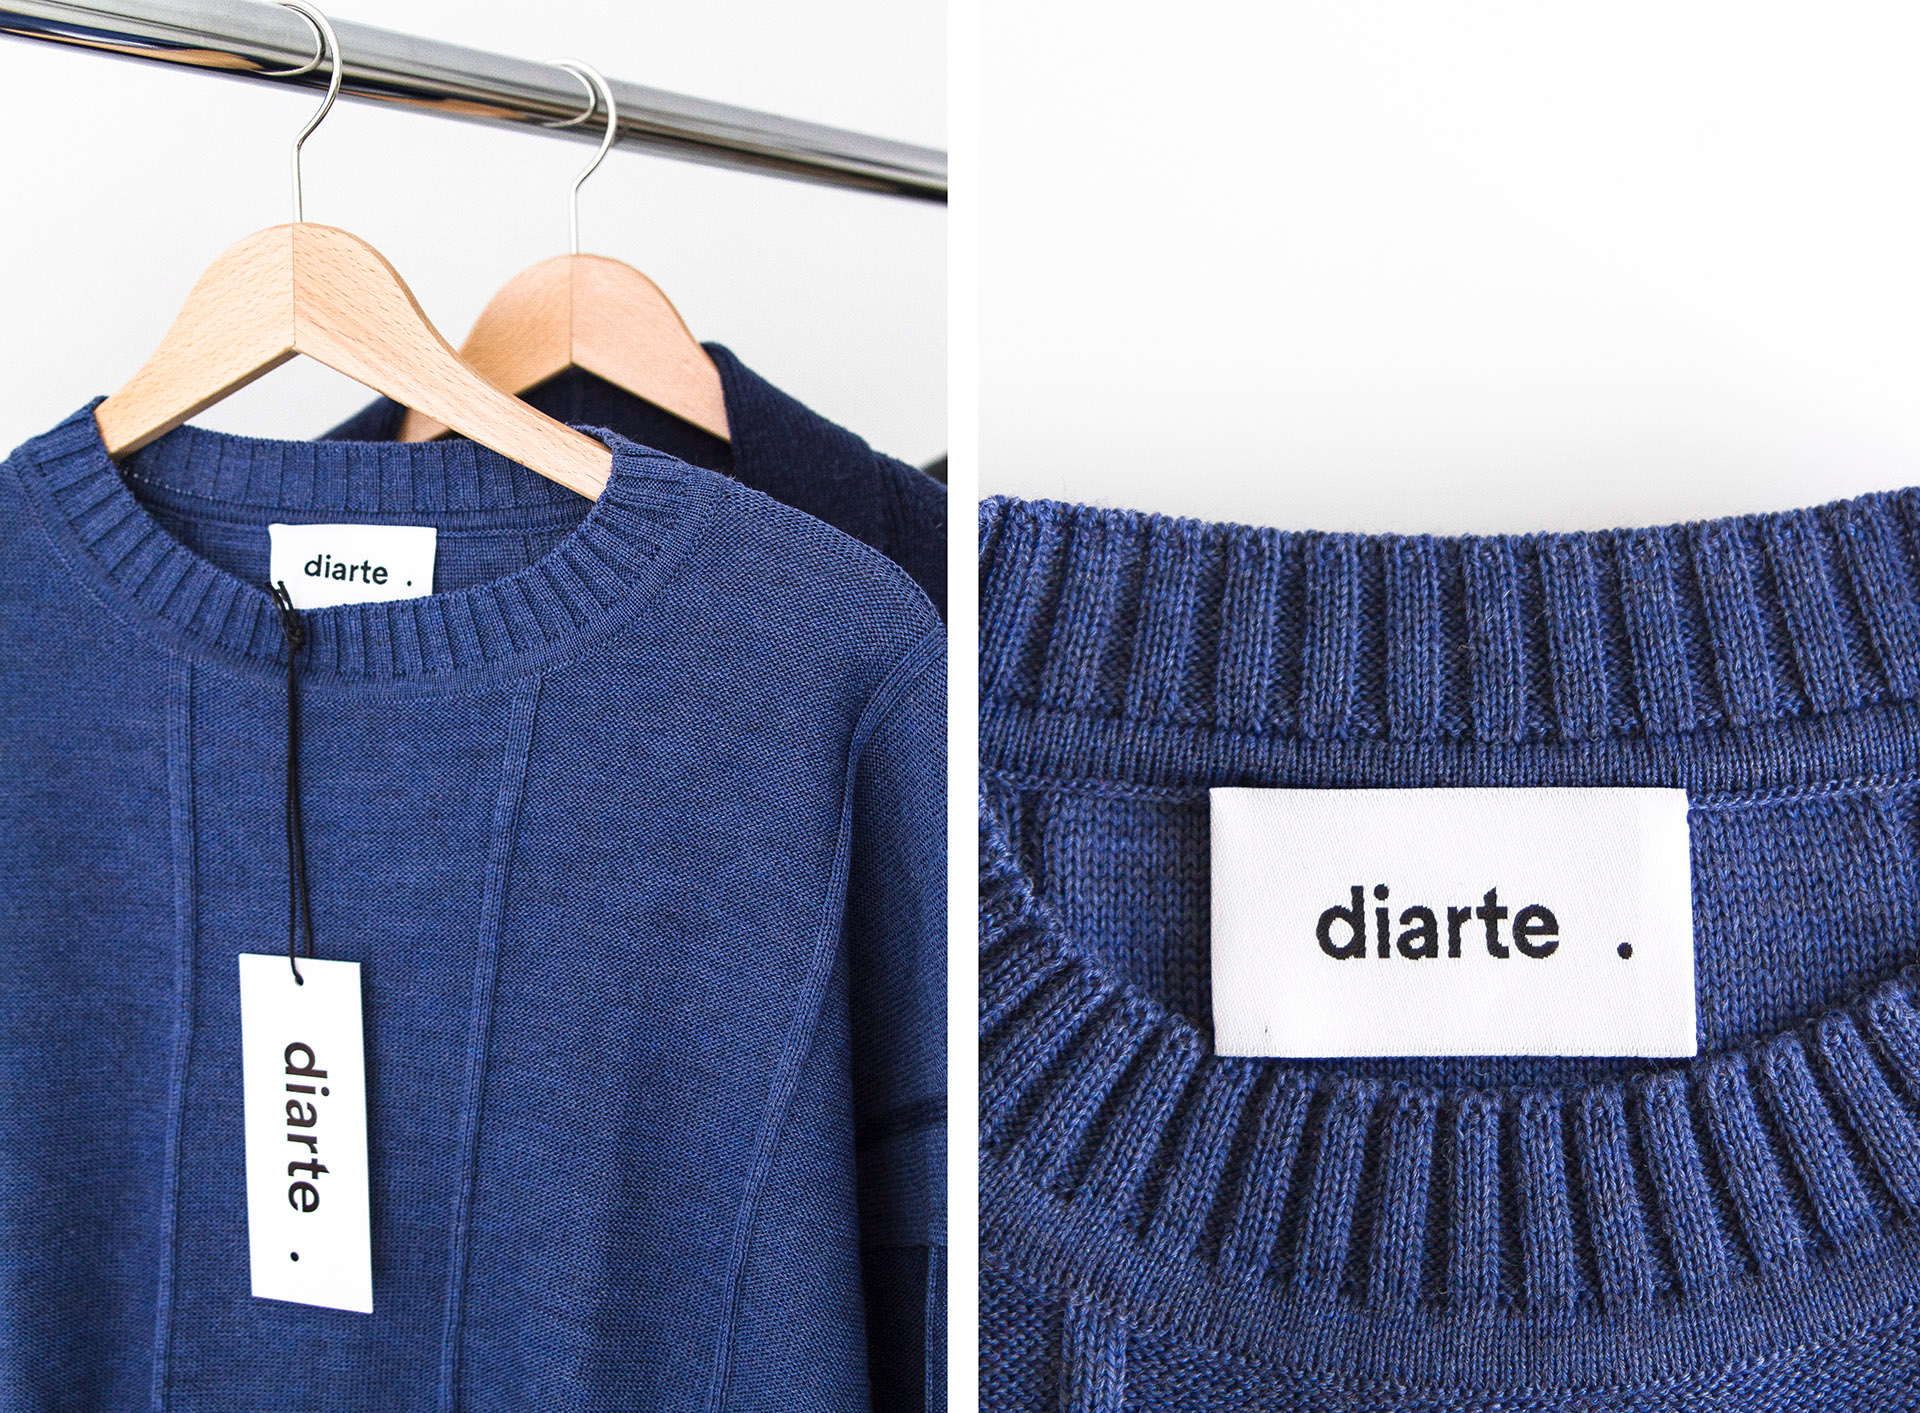 Diarte时尚针织品牌视觉设计